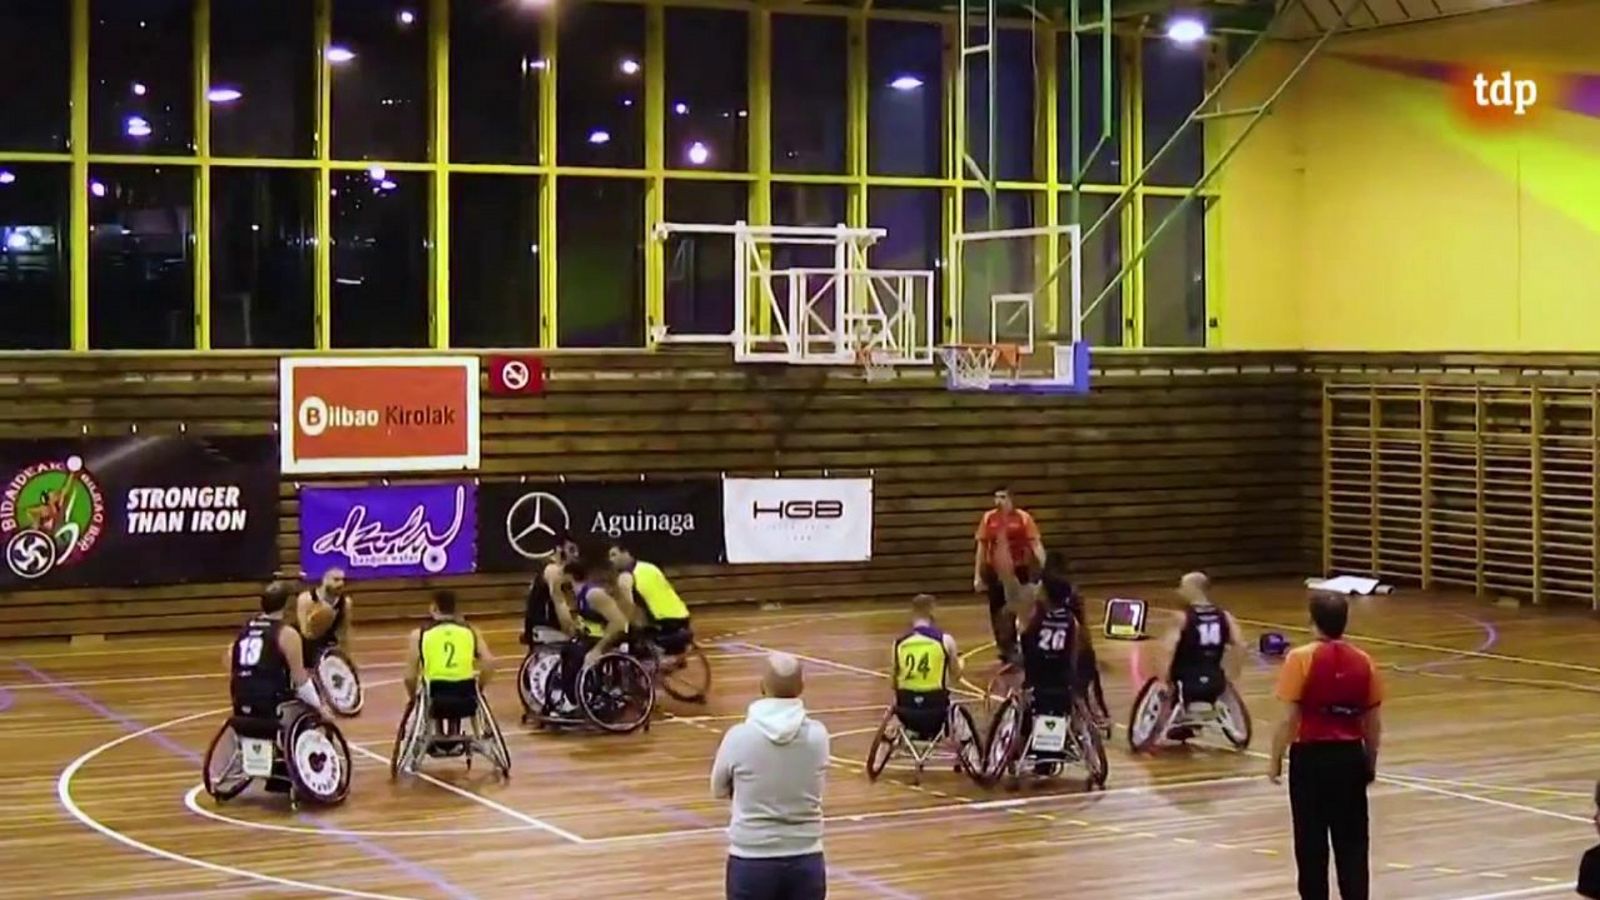 Baloncesto en silla de ruedas - Liga BSR División de honor. Resumen Jornada 10 - RTVE.es